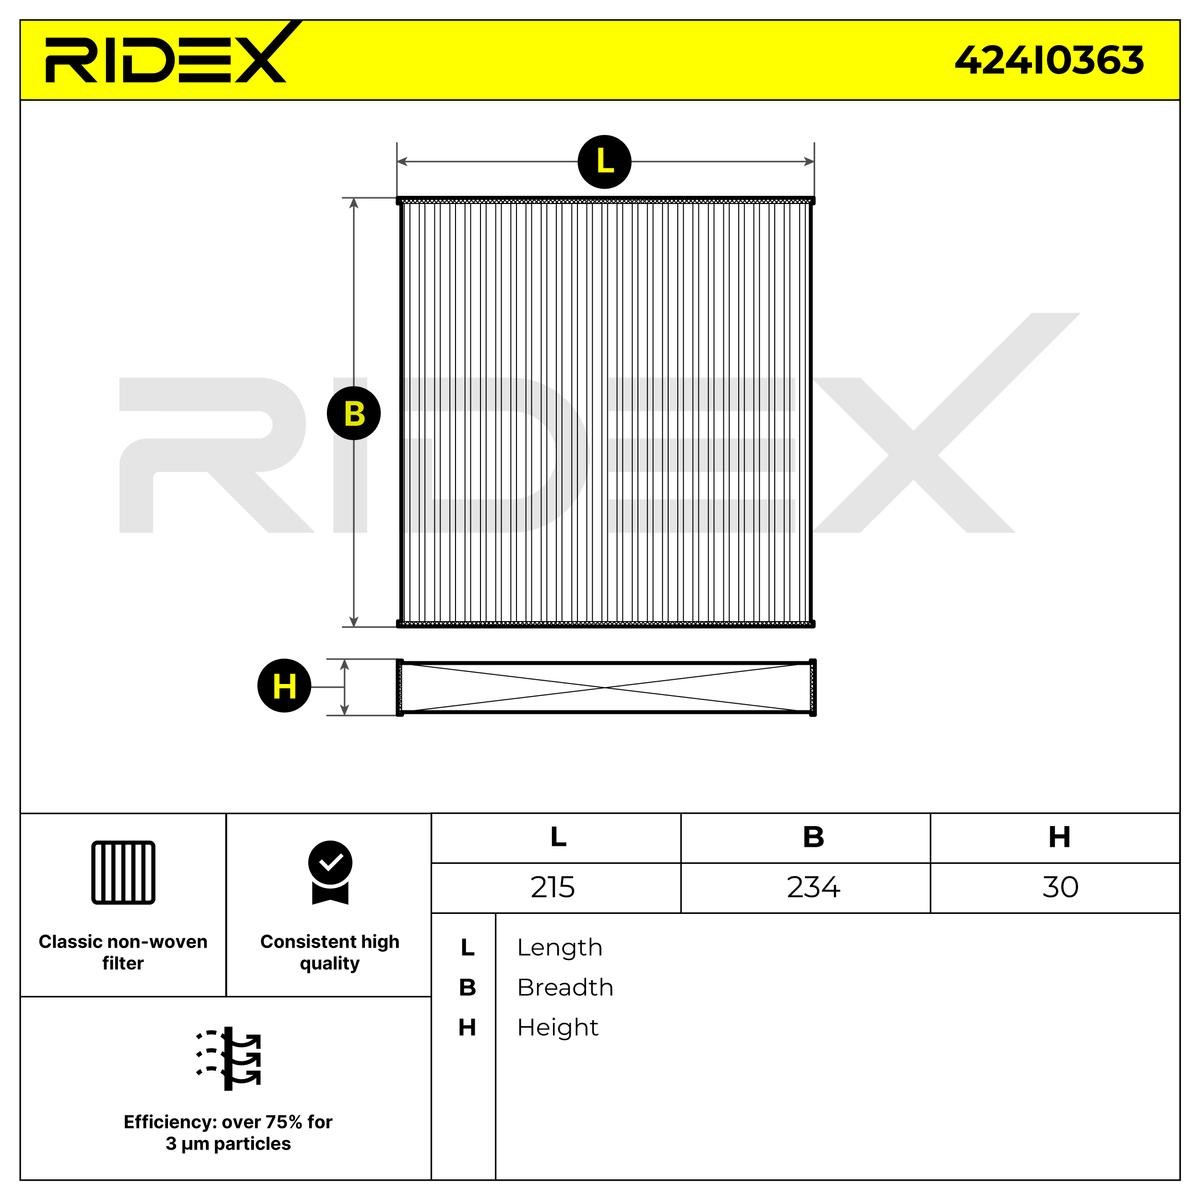 RIDEX 424I0363 Microfiltro Filtro particellare x 234 mm x 30,0 mm